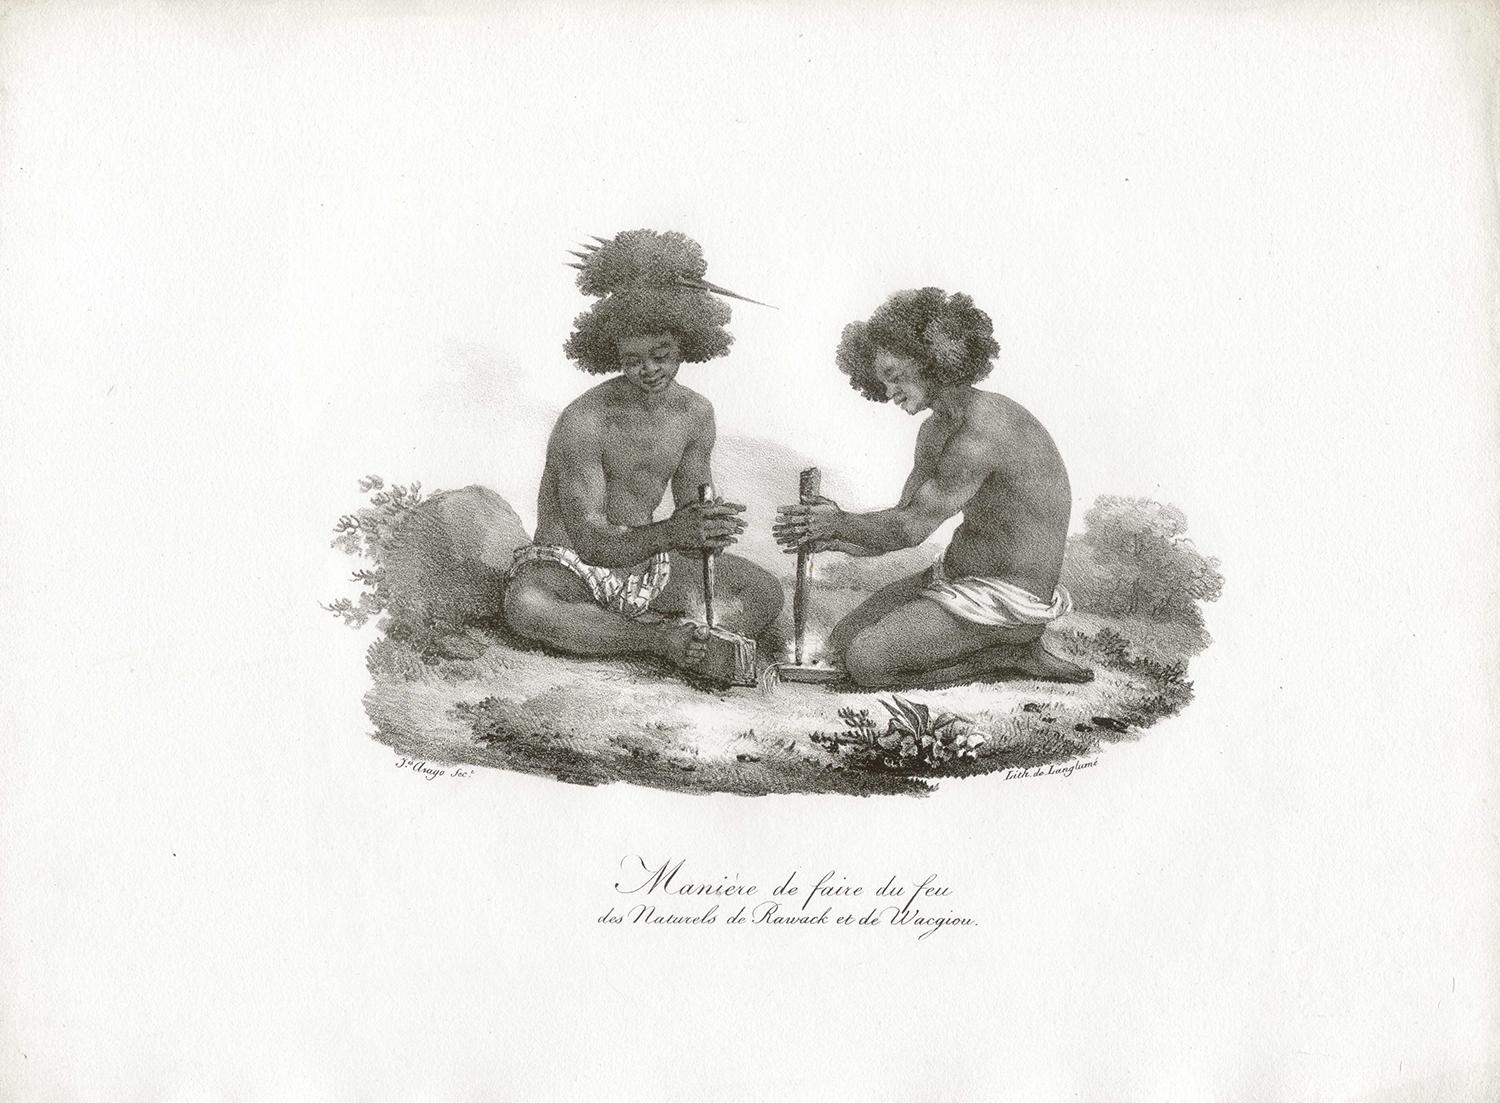 Maniere de faire du feu des Naturels de Rawack et de Wacgiou, lithograph - Print by After Jacques Arago